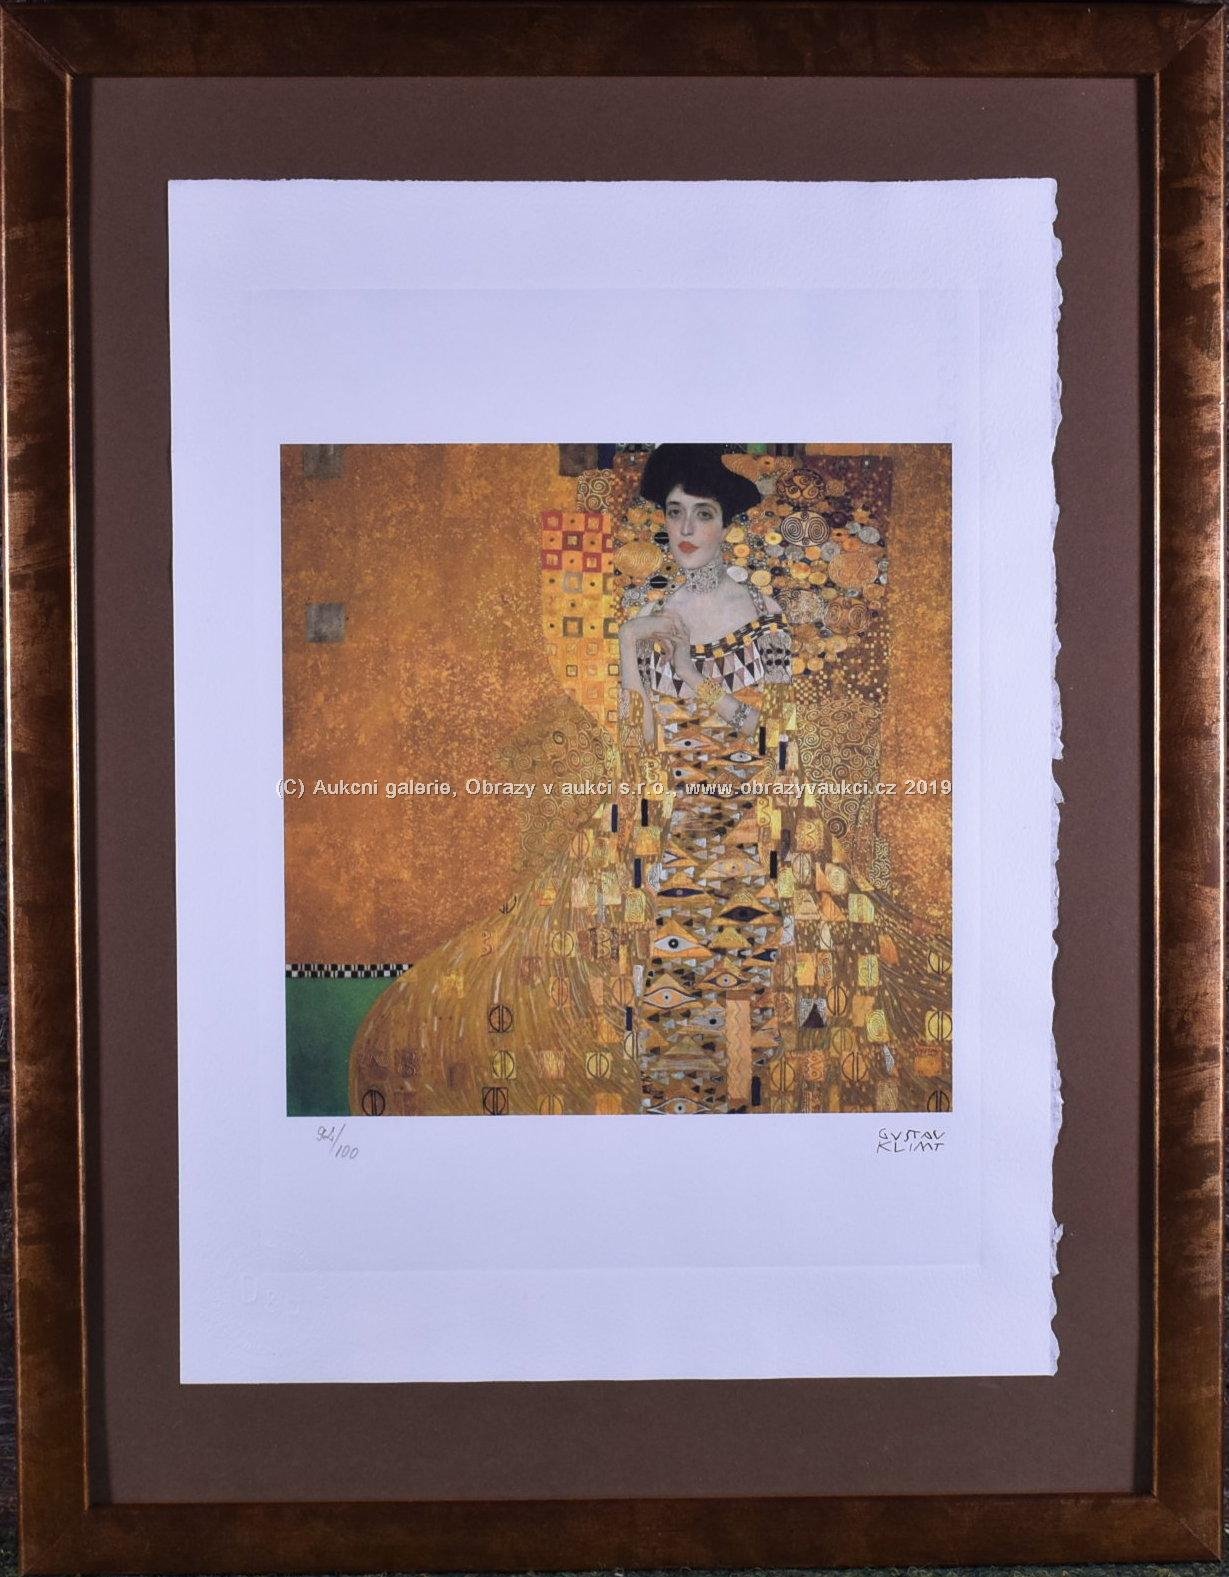 Gustav Klimt - Adele